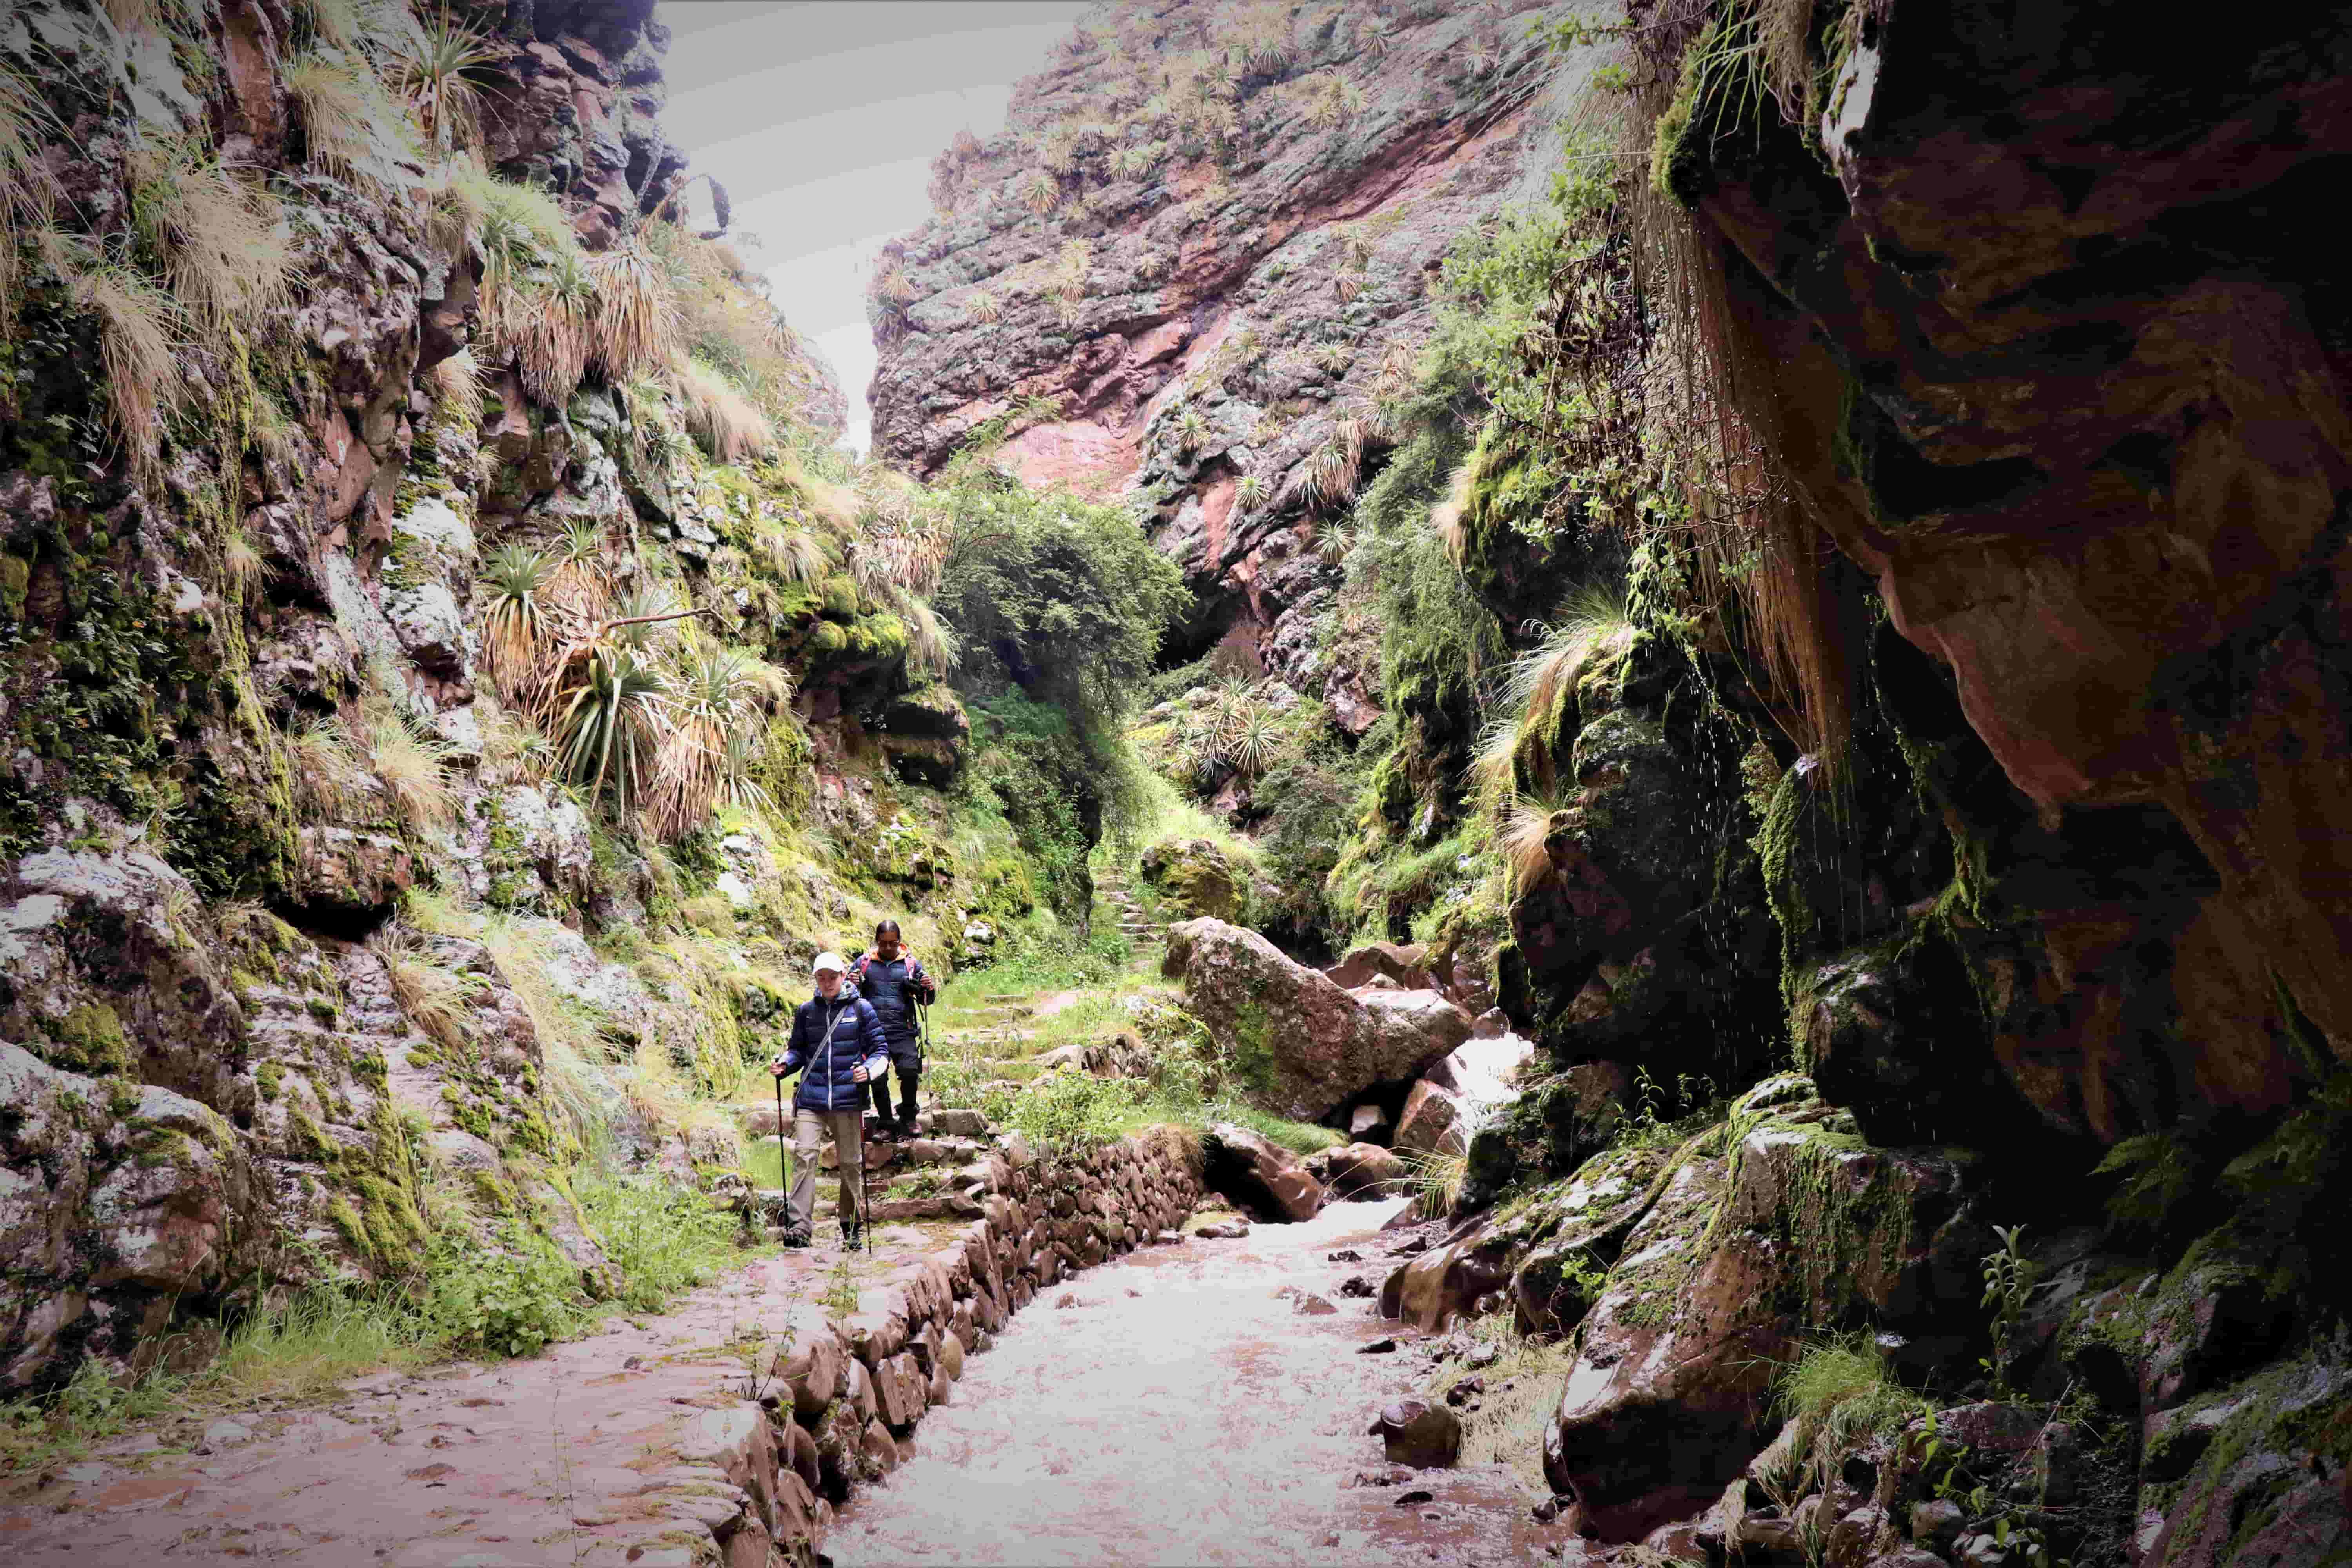  Huchuy Qosqo Canyon - Huchuy Qosqo + Short Inca Trail 4 days